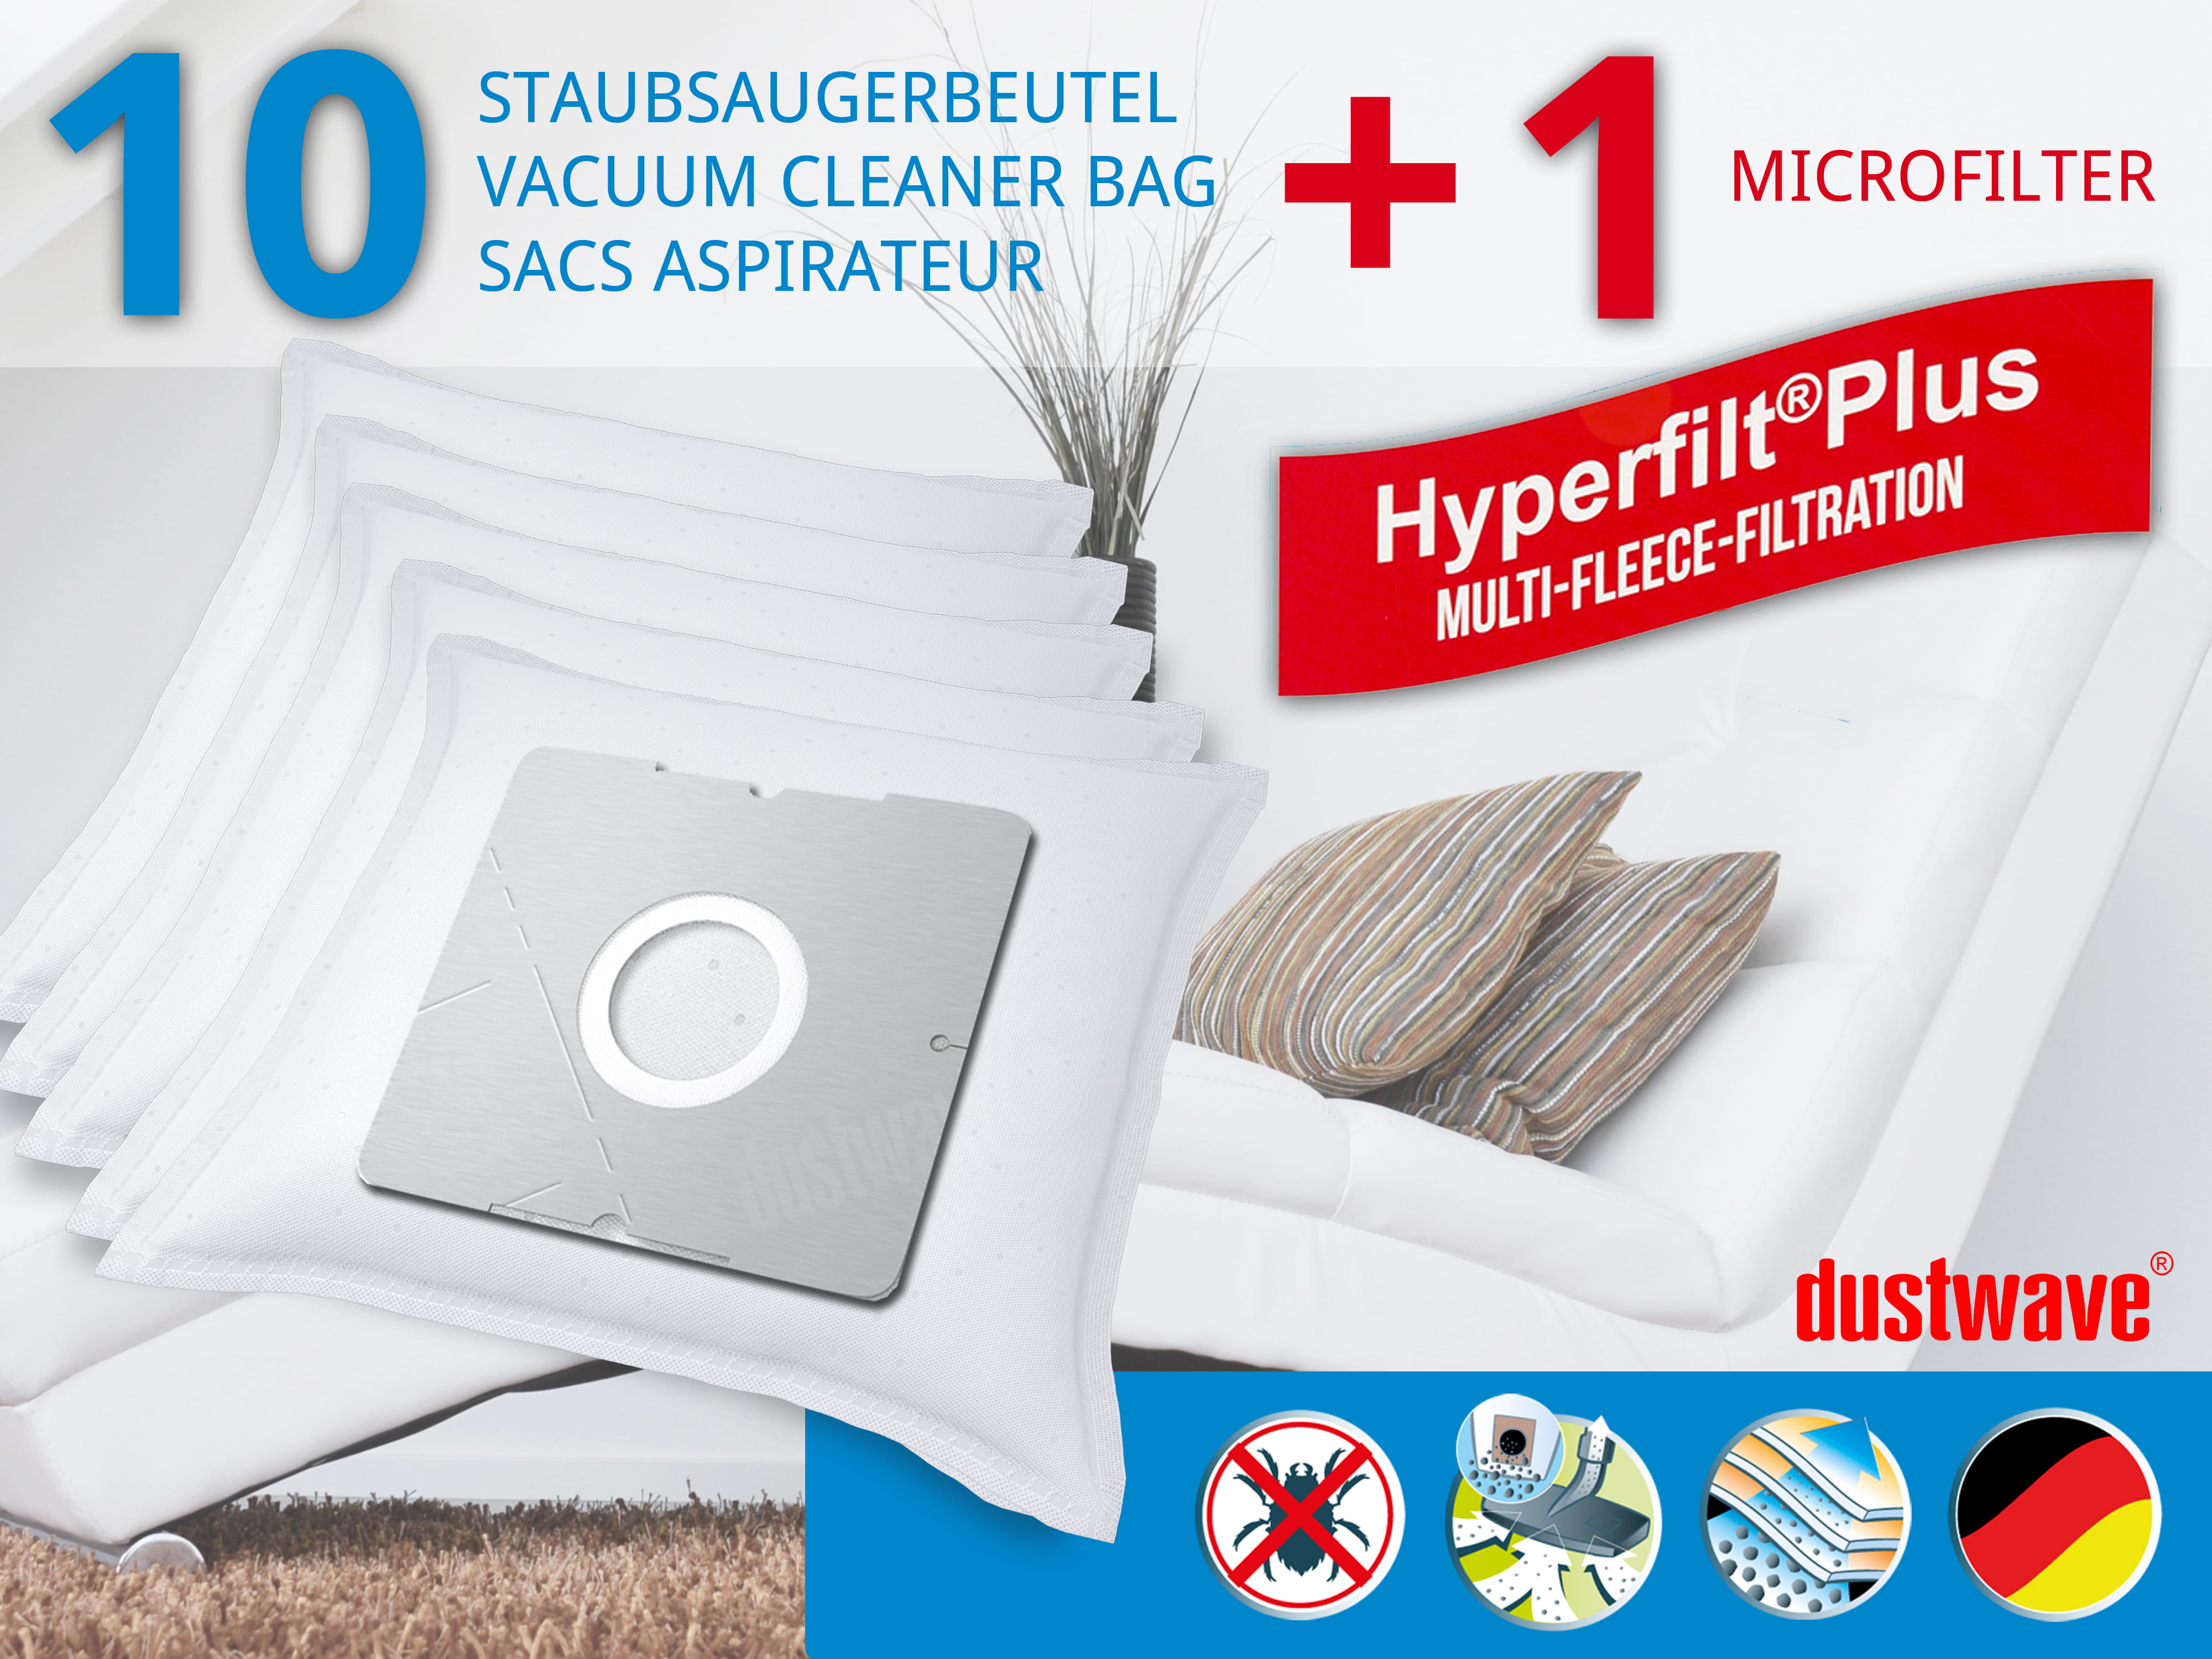 Dustwave® 10 Staubsaugerbeutel für Comfee CBB 700WR - hocheffizient mit Hygieneverschluss - Made in Germany